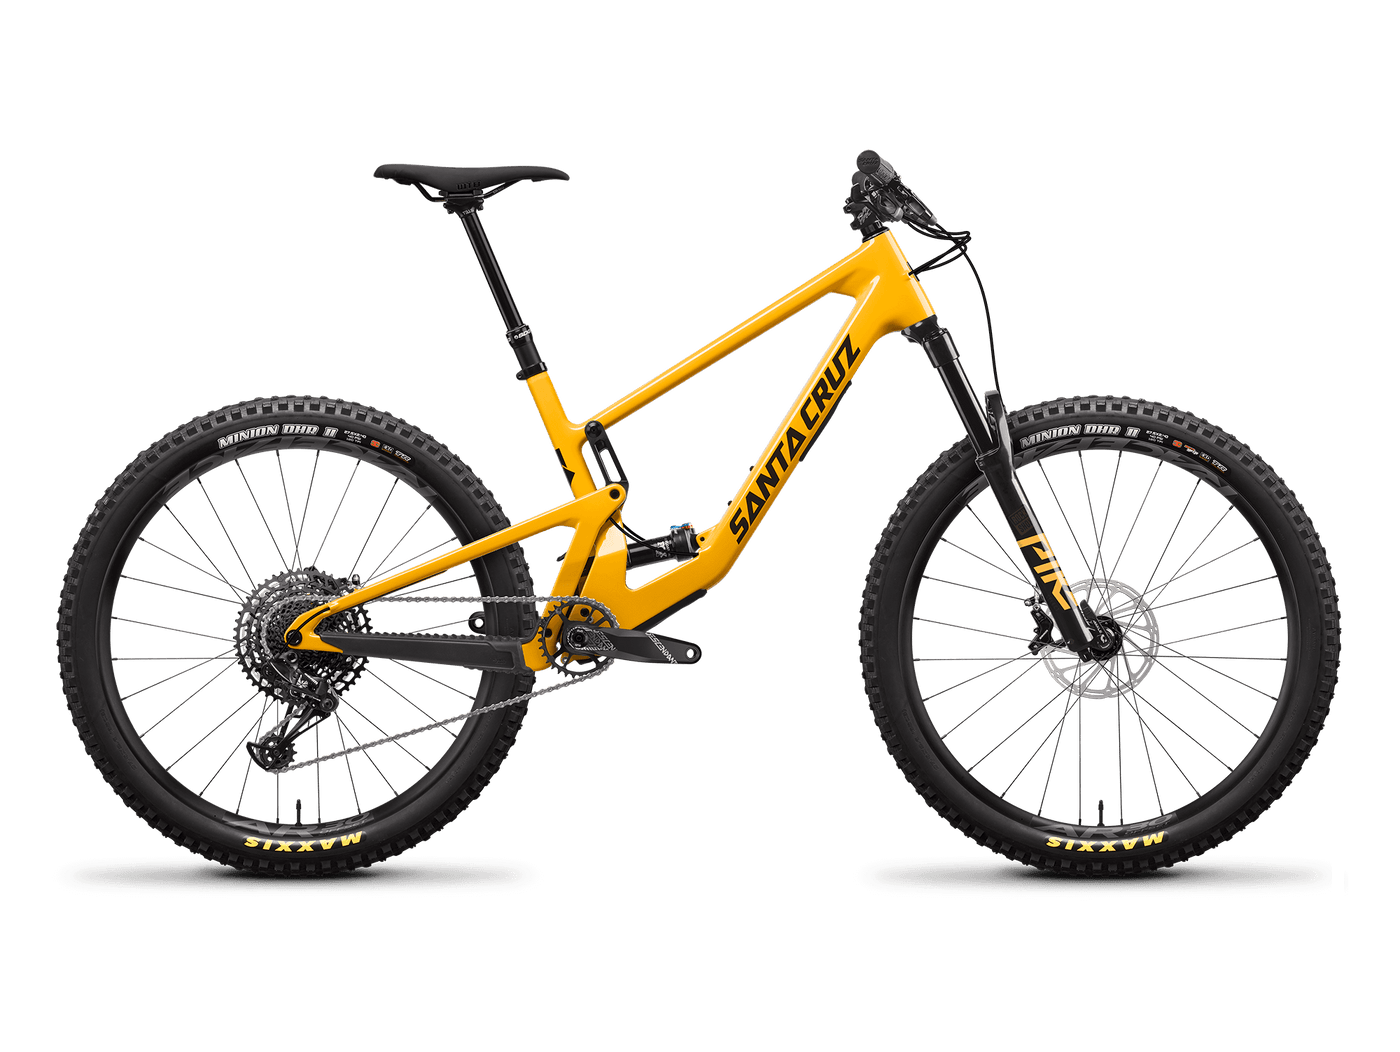 Bicicleta Santa Cruz 5010 4 C 27.5 22 Lg Ylw